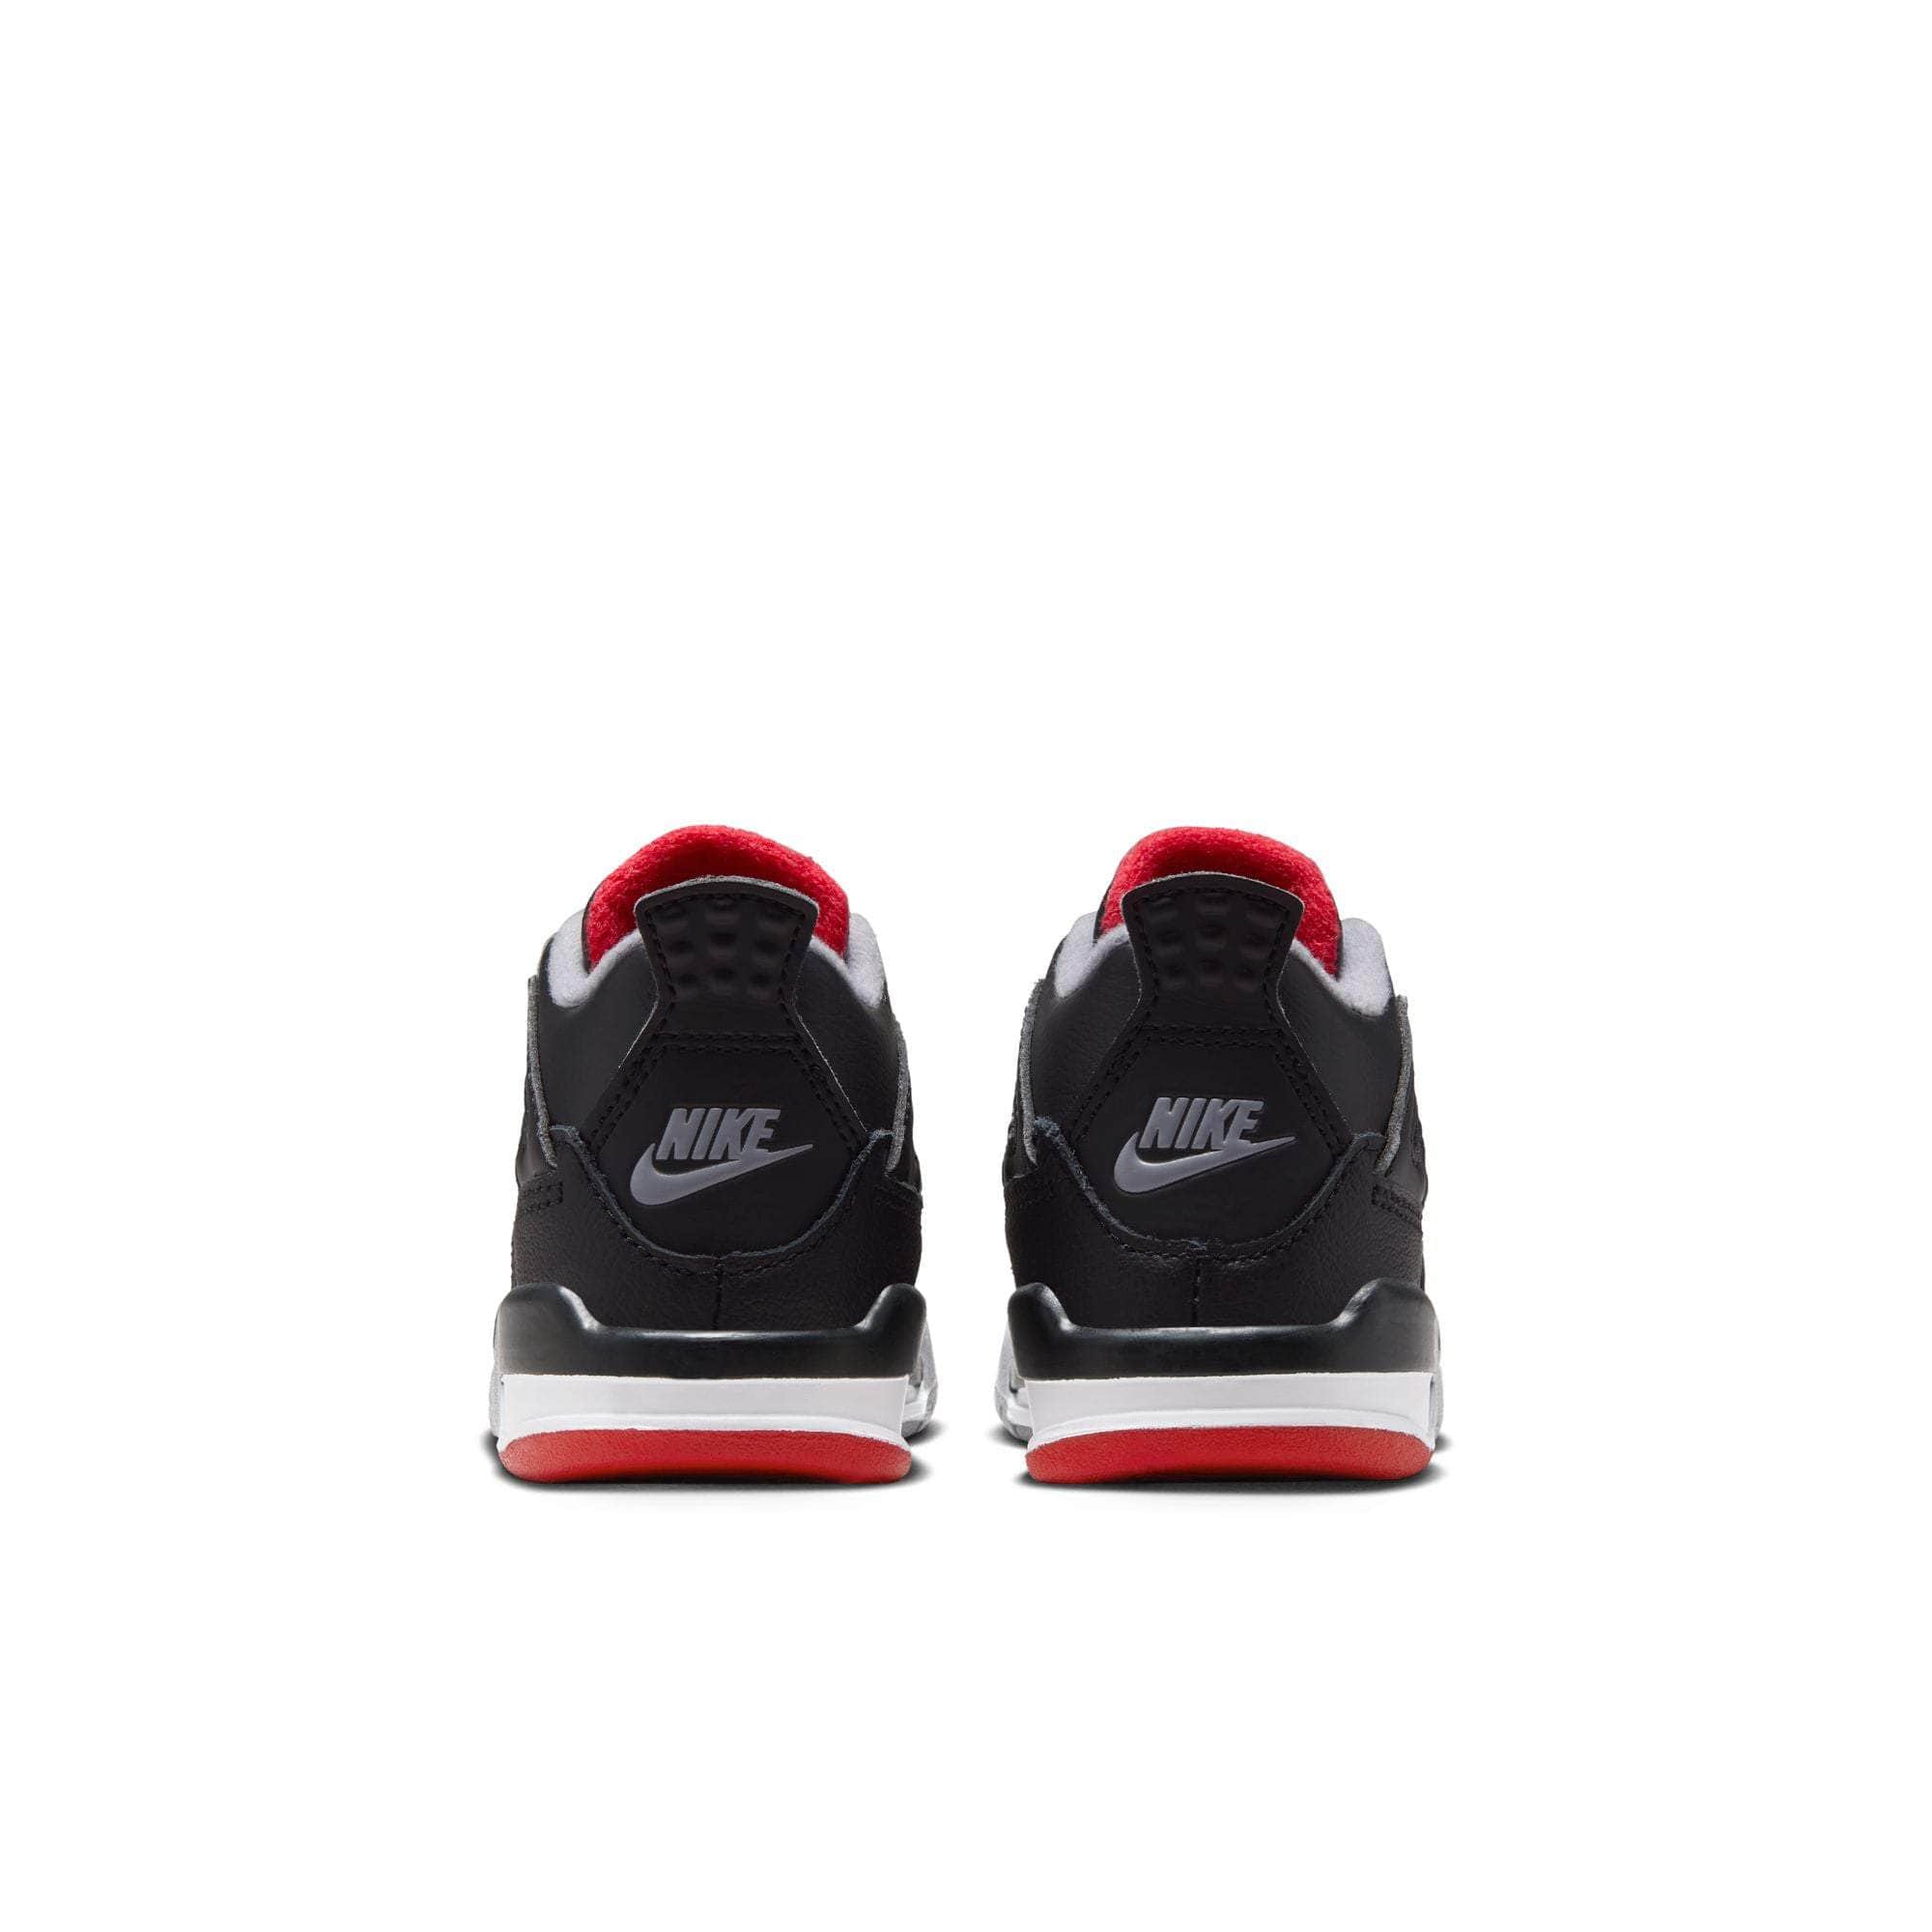 Air Jordan Footwear Air Jordan 4 Retro "Bred Reimagined" - Toddler's